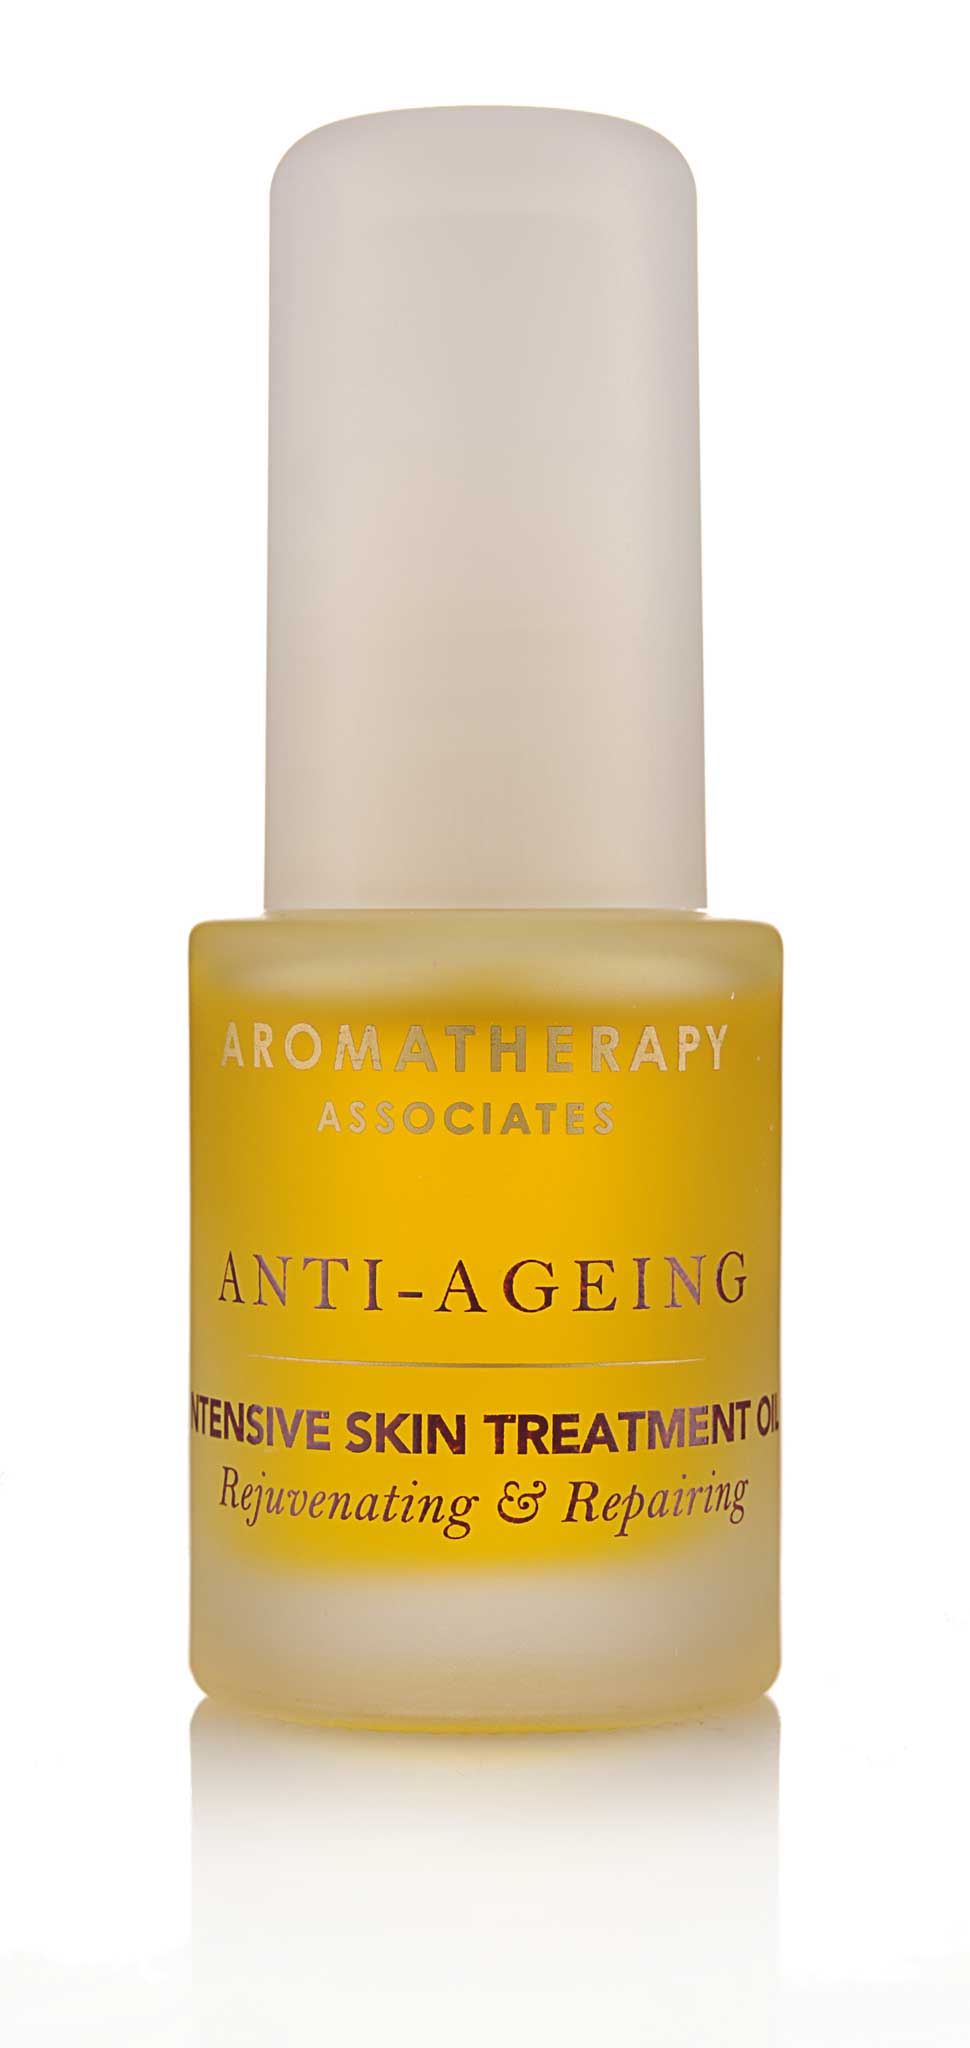 Intensive Skin Treatment Oil, £45.50, Aromatherapy Associates, aromatherapyassociates.com